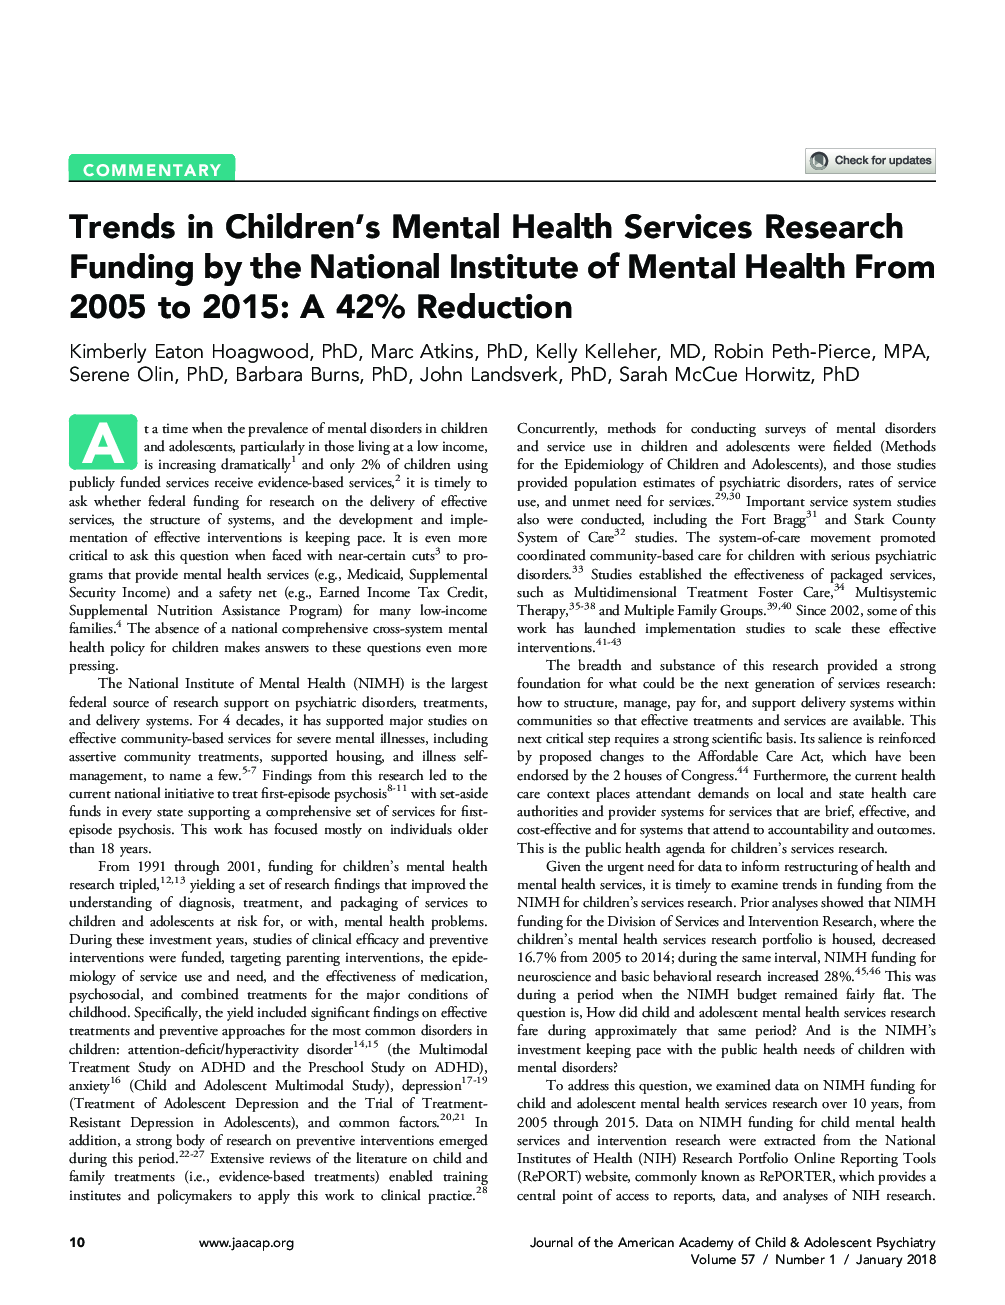 روند تحقیق در مورد خدمات تحقیقاتی خدمات بهداشت روان کودکان توسط موسسه ملی سلامت روان از 2005 تا 2015: کاهش 42 درصدی 